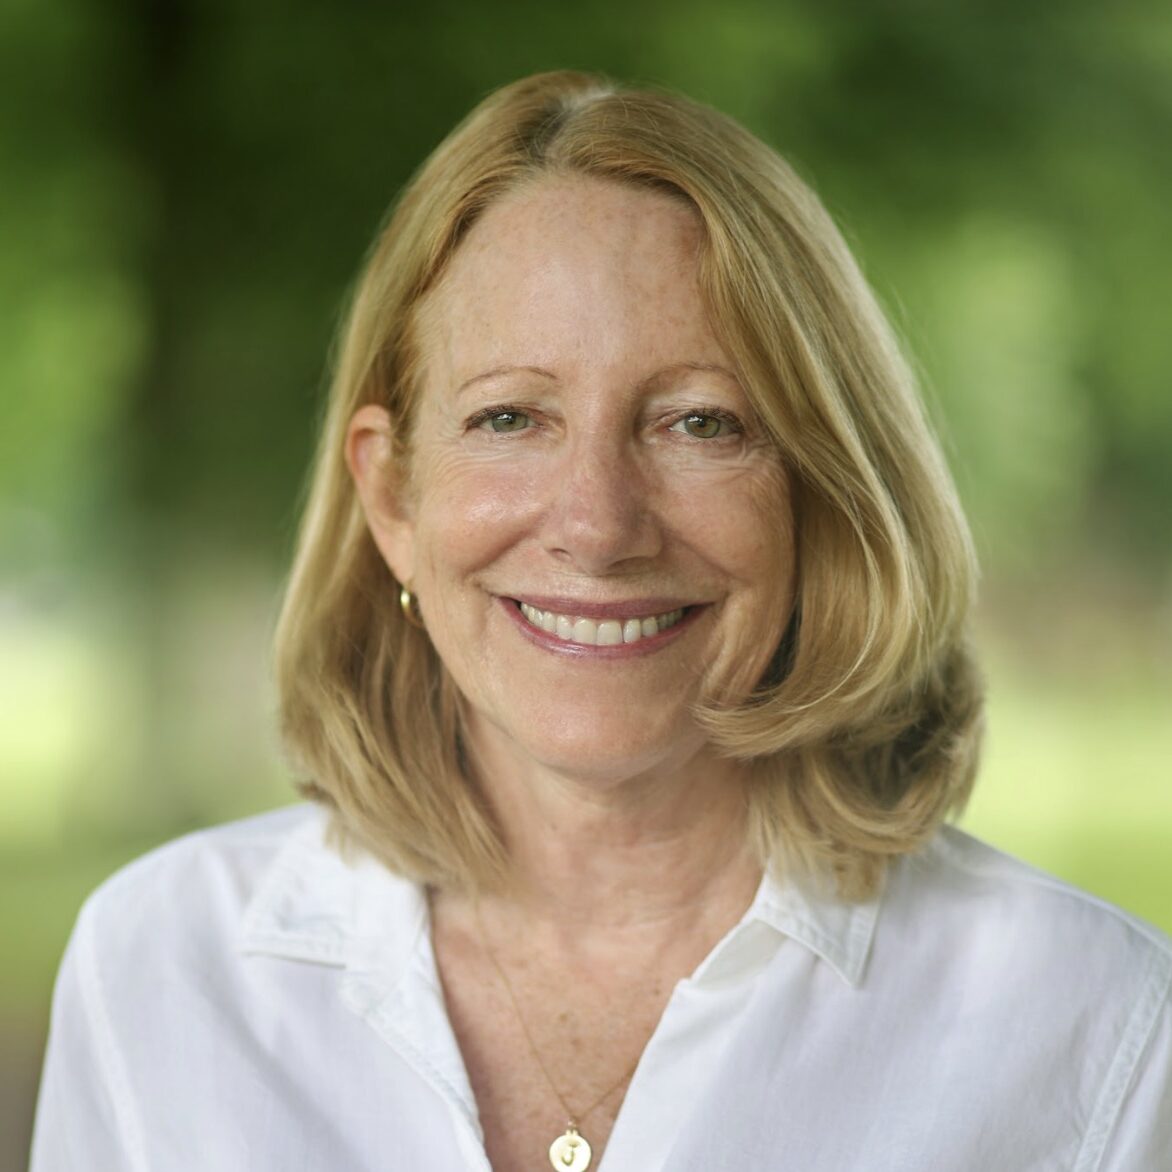 Jeanne Ross, A brighter way deputy director